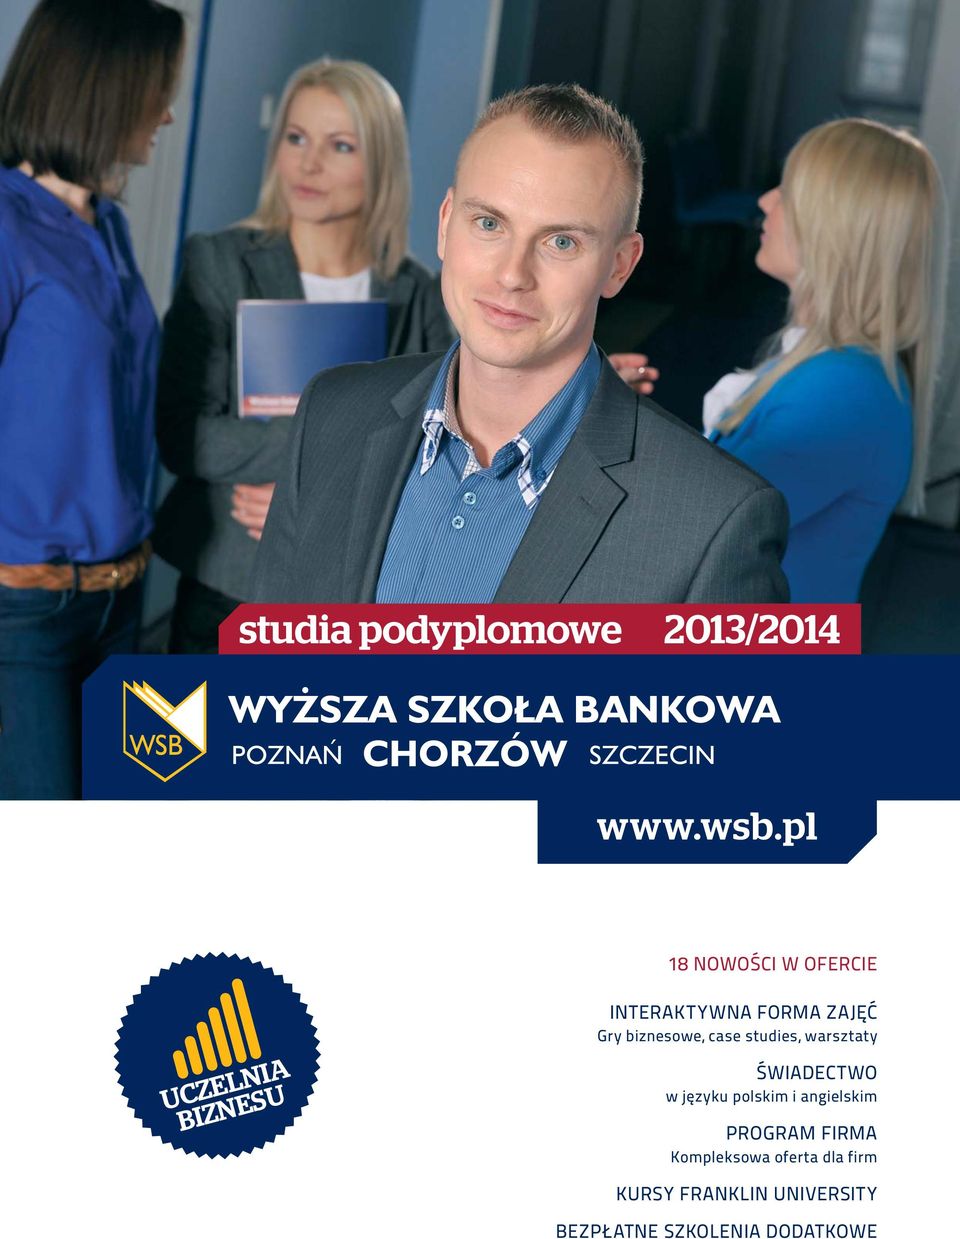 case studies, warsztaty ŚWIADECTWO w języku polskim i